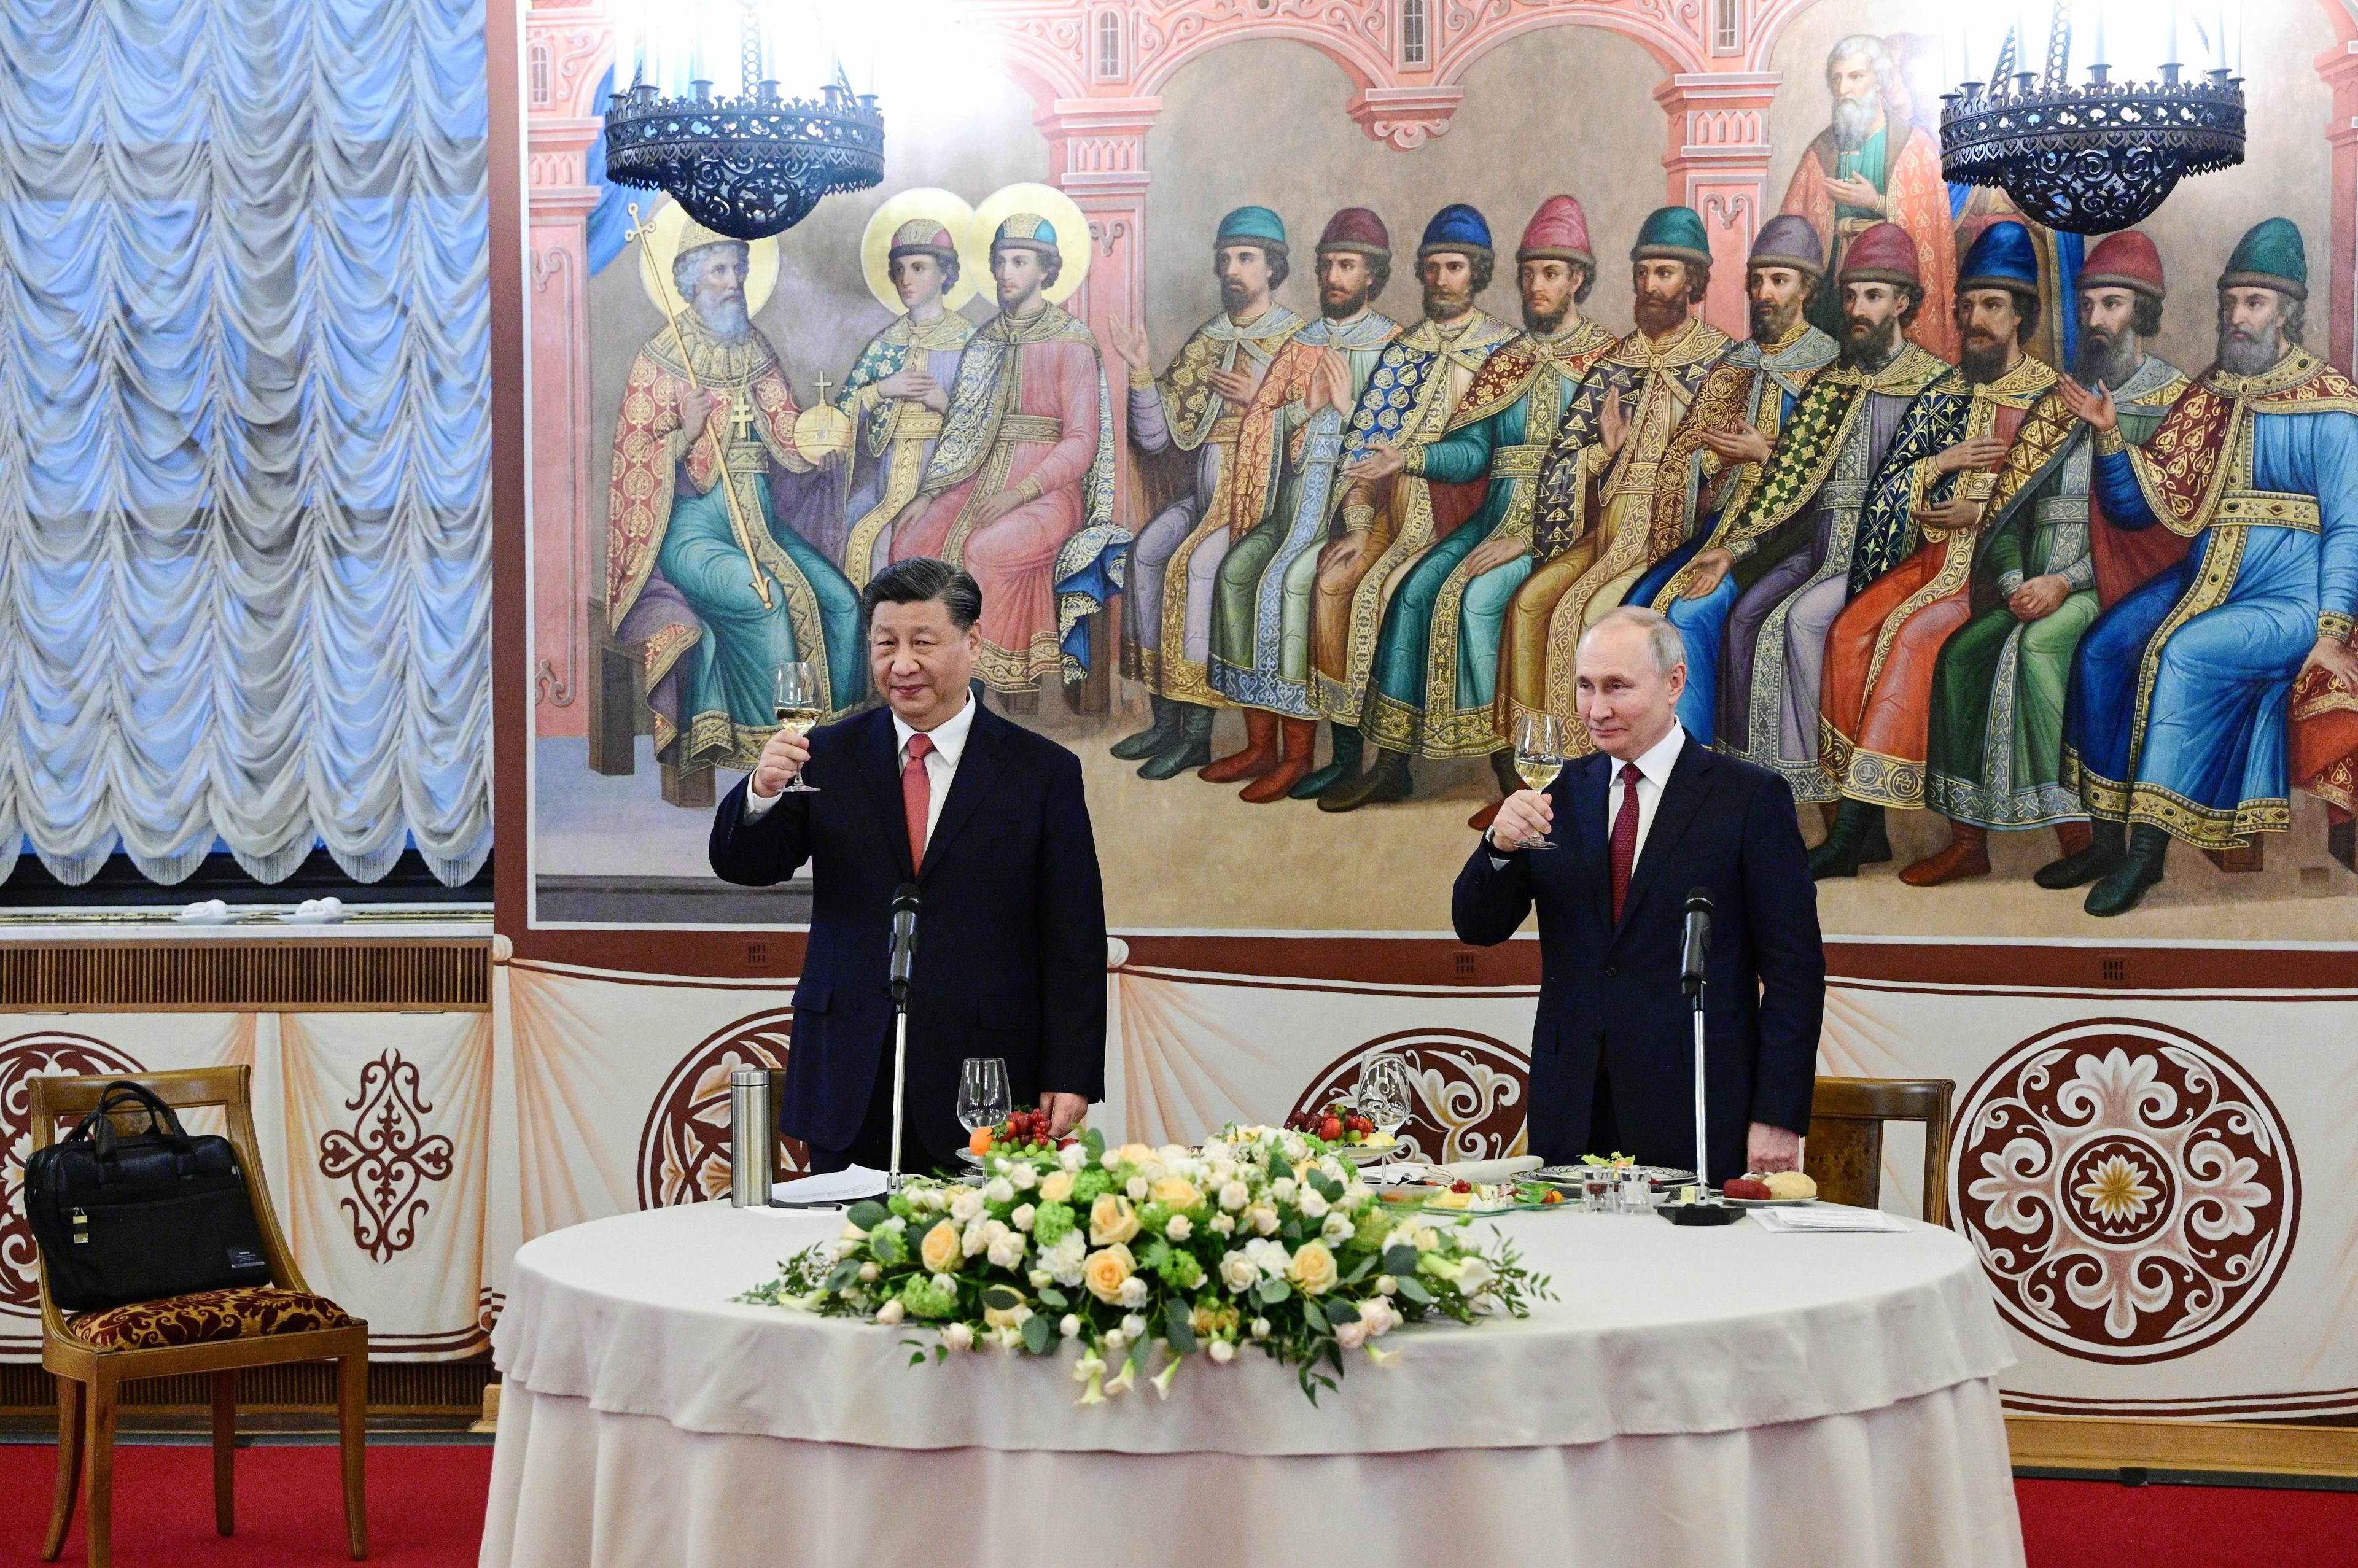 Władimir Putin i Xi Jinping stoją przy stole bankietowym z kieliszkami. Na stole żółte kwiaty, za politykami fresk